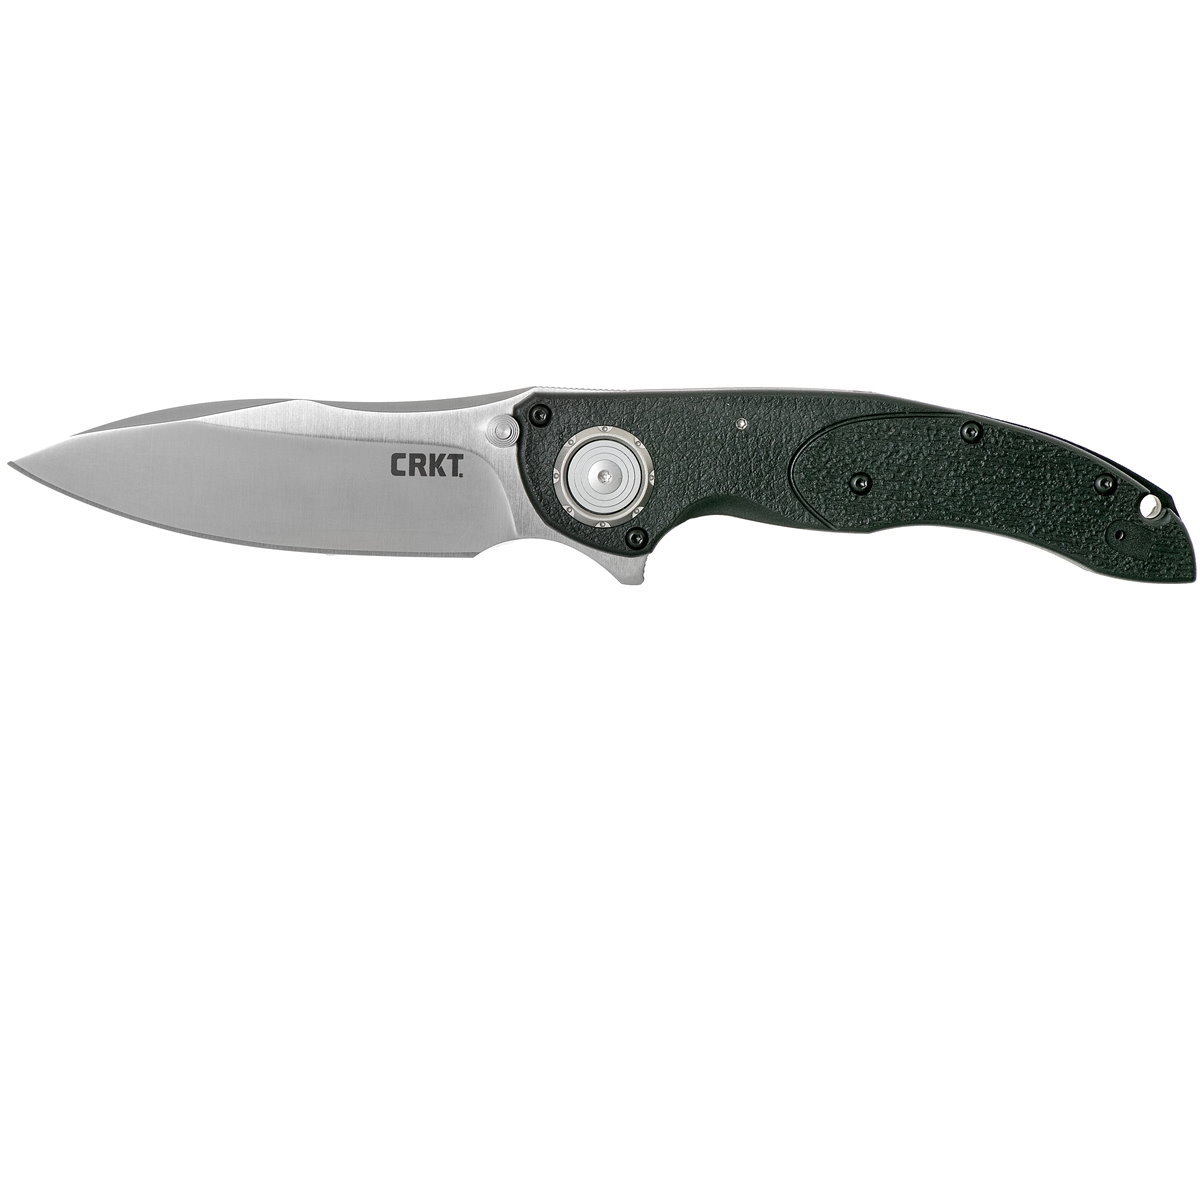 Складной нож CRKT Linchpin, сталь 1.4116 Satin, рукоять термопластик GRN складной нож crkt m40 03 сталь 1 4116 рукоять термопластик grn